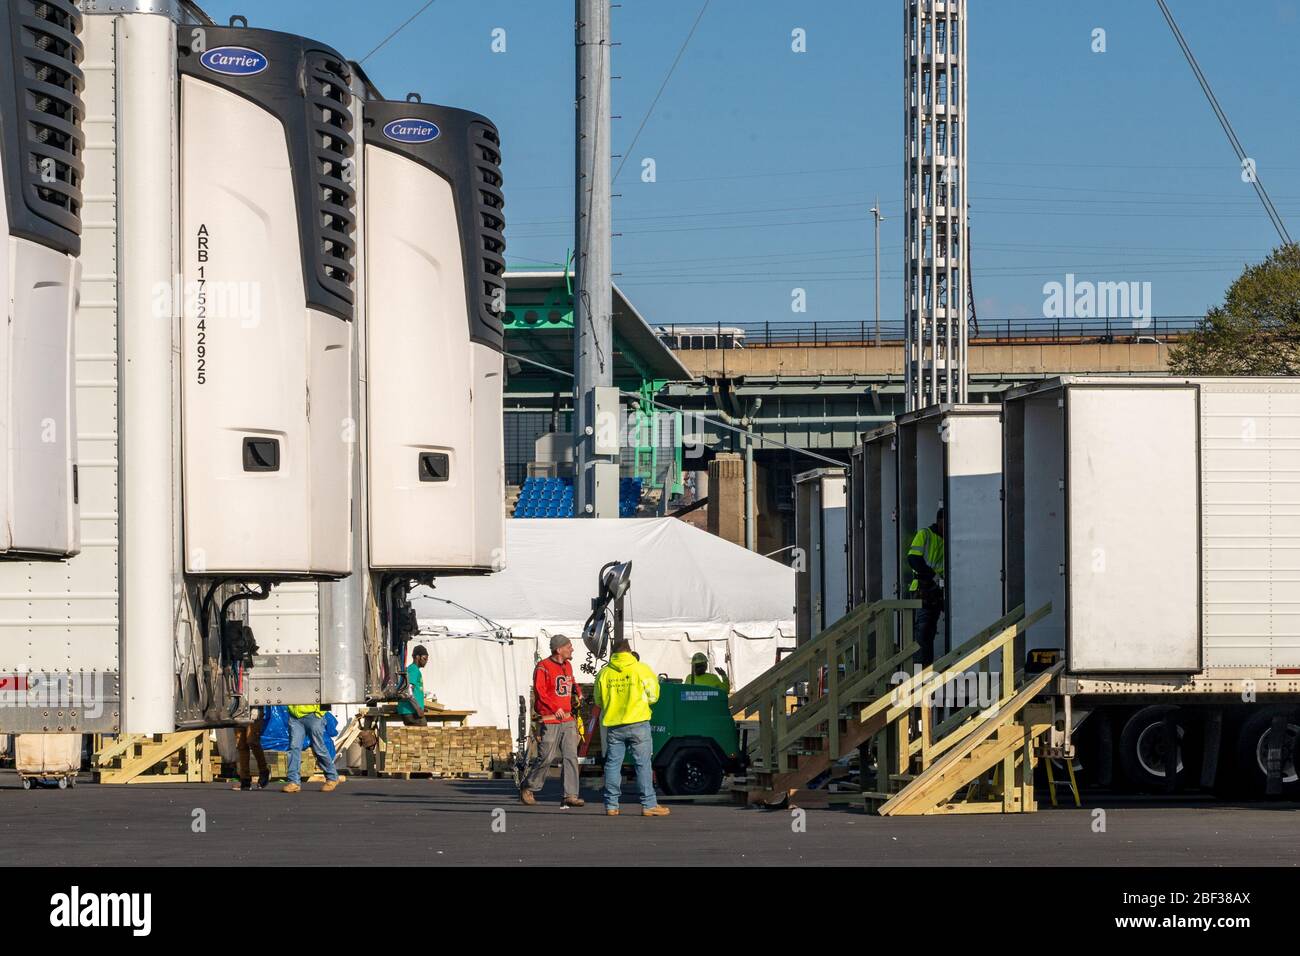 NEW YORK, États-Unis - 15 AVRIL: La photo montre que de nouvelles morgues de conteneurs sont en préparation pour les victimes de coronavirus (COVID-19) qui seront livrées aux hôpitaux le Banque D'Images